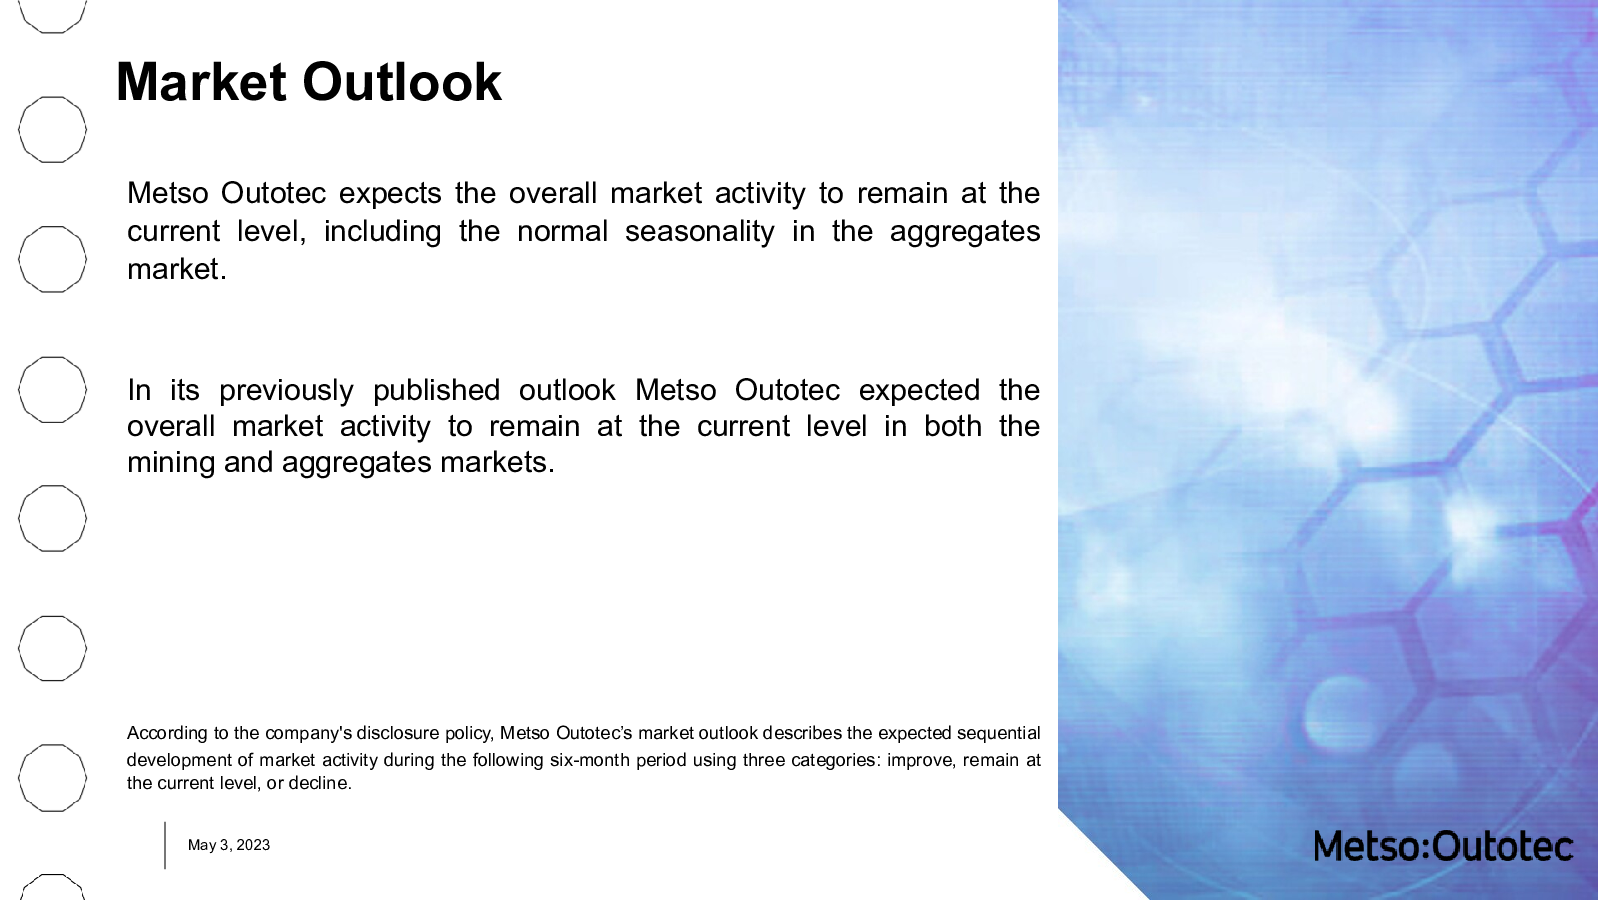 Market Outlook 

Met